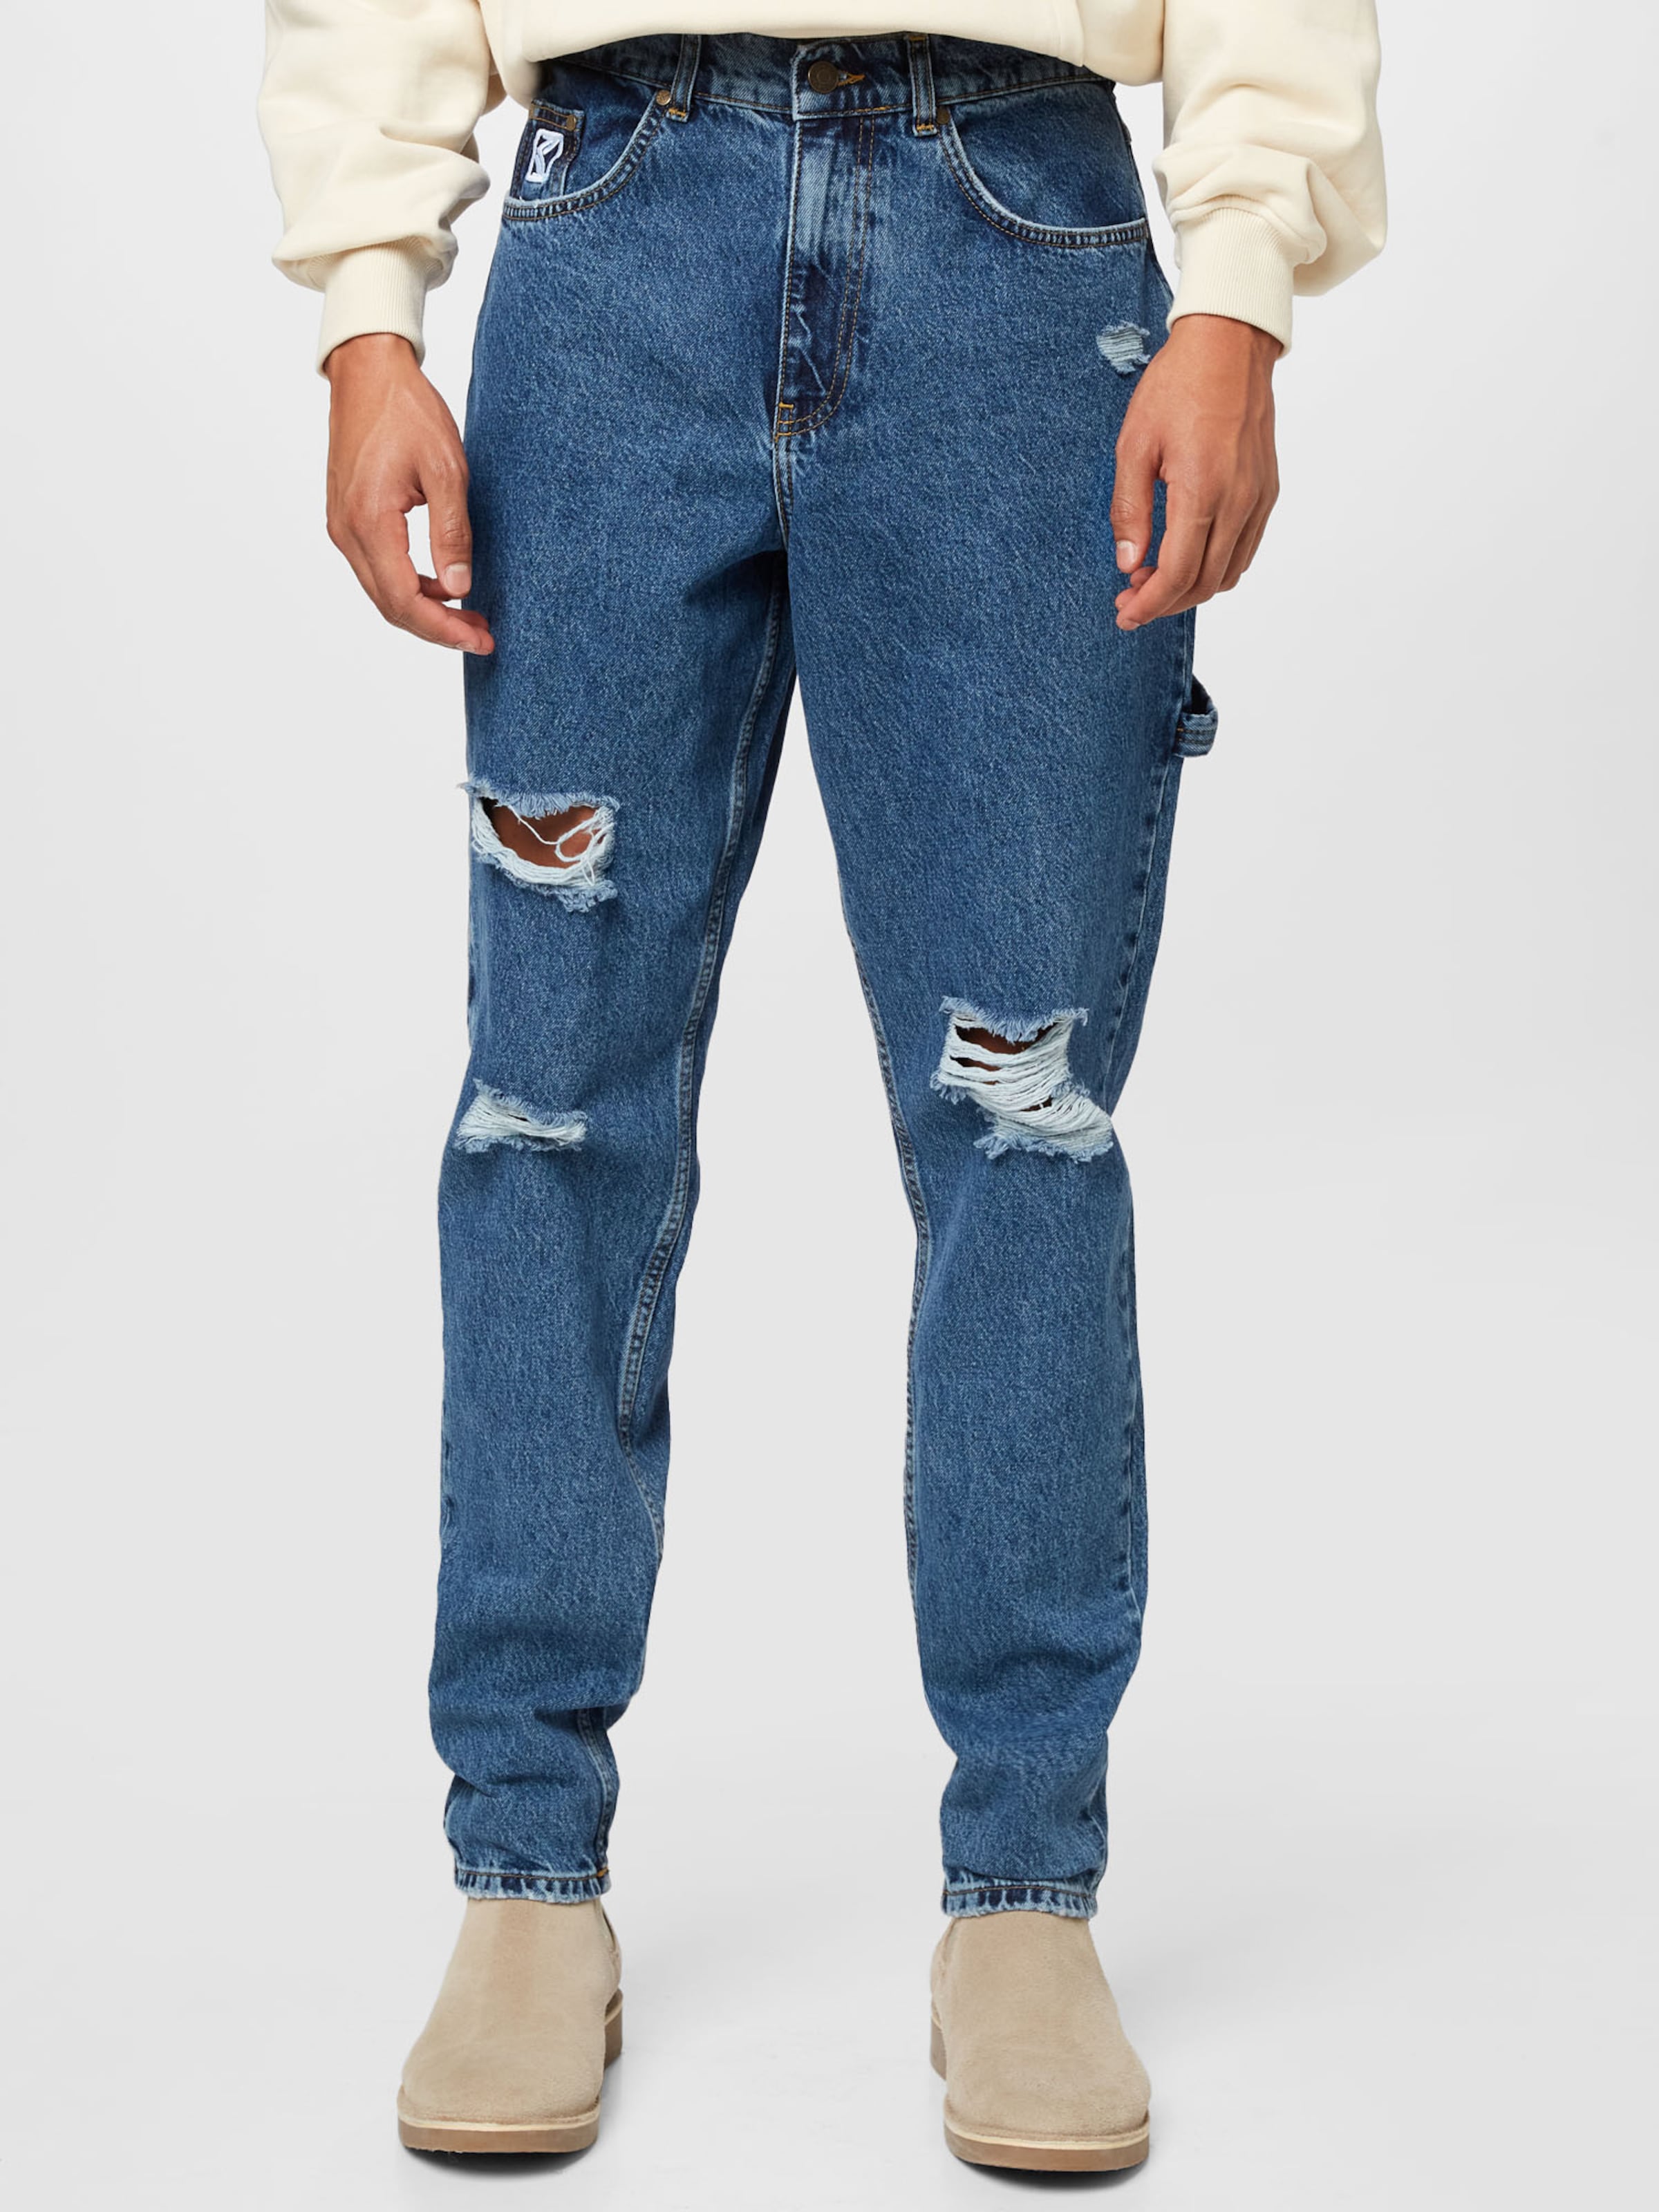 Jeans RAZOR ABOUT YOU Uomo Abbigliamento Pantaloni e jeans Jeans Jeans slim & sigaretta 